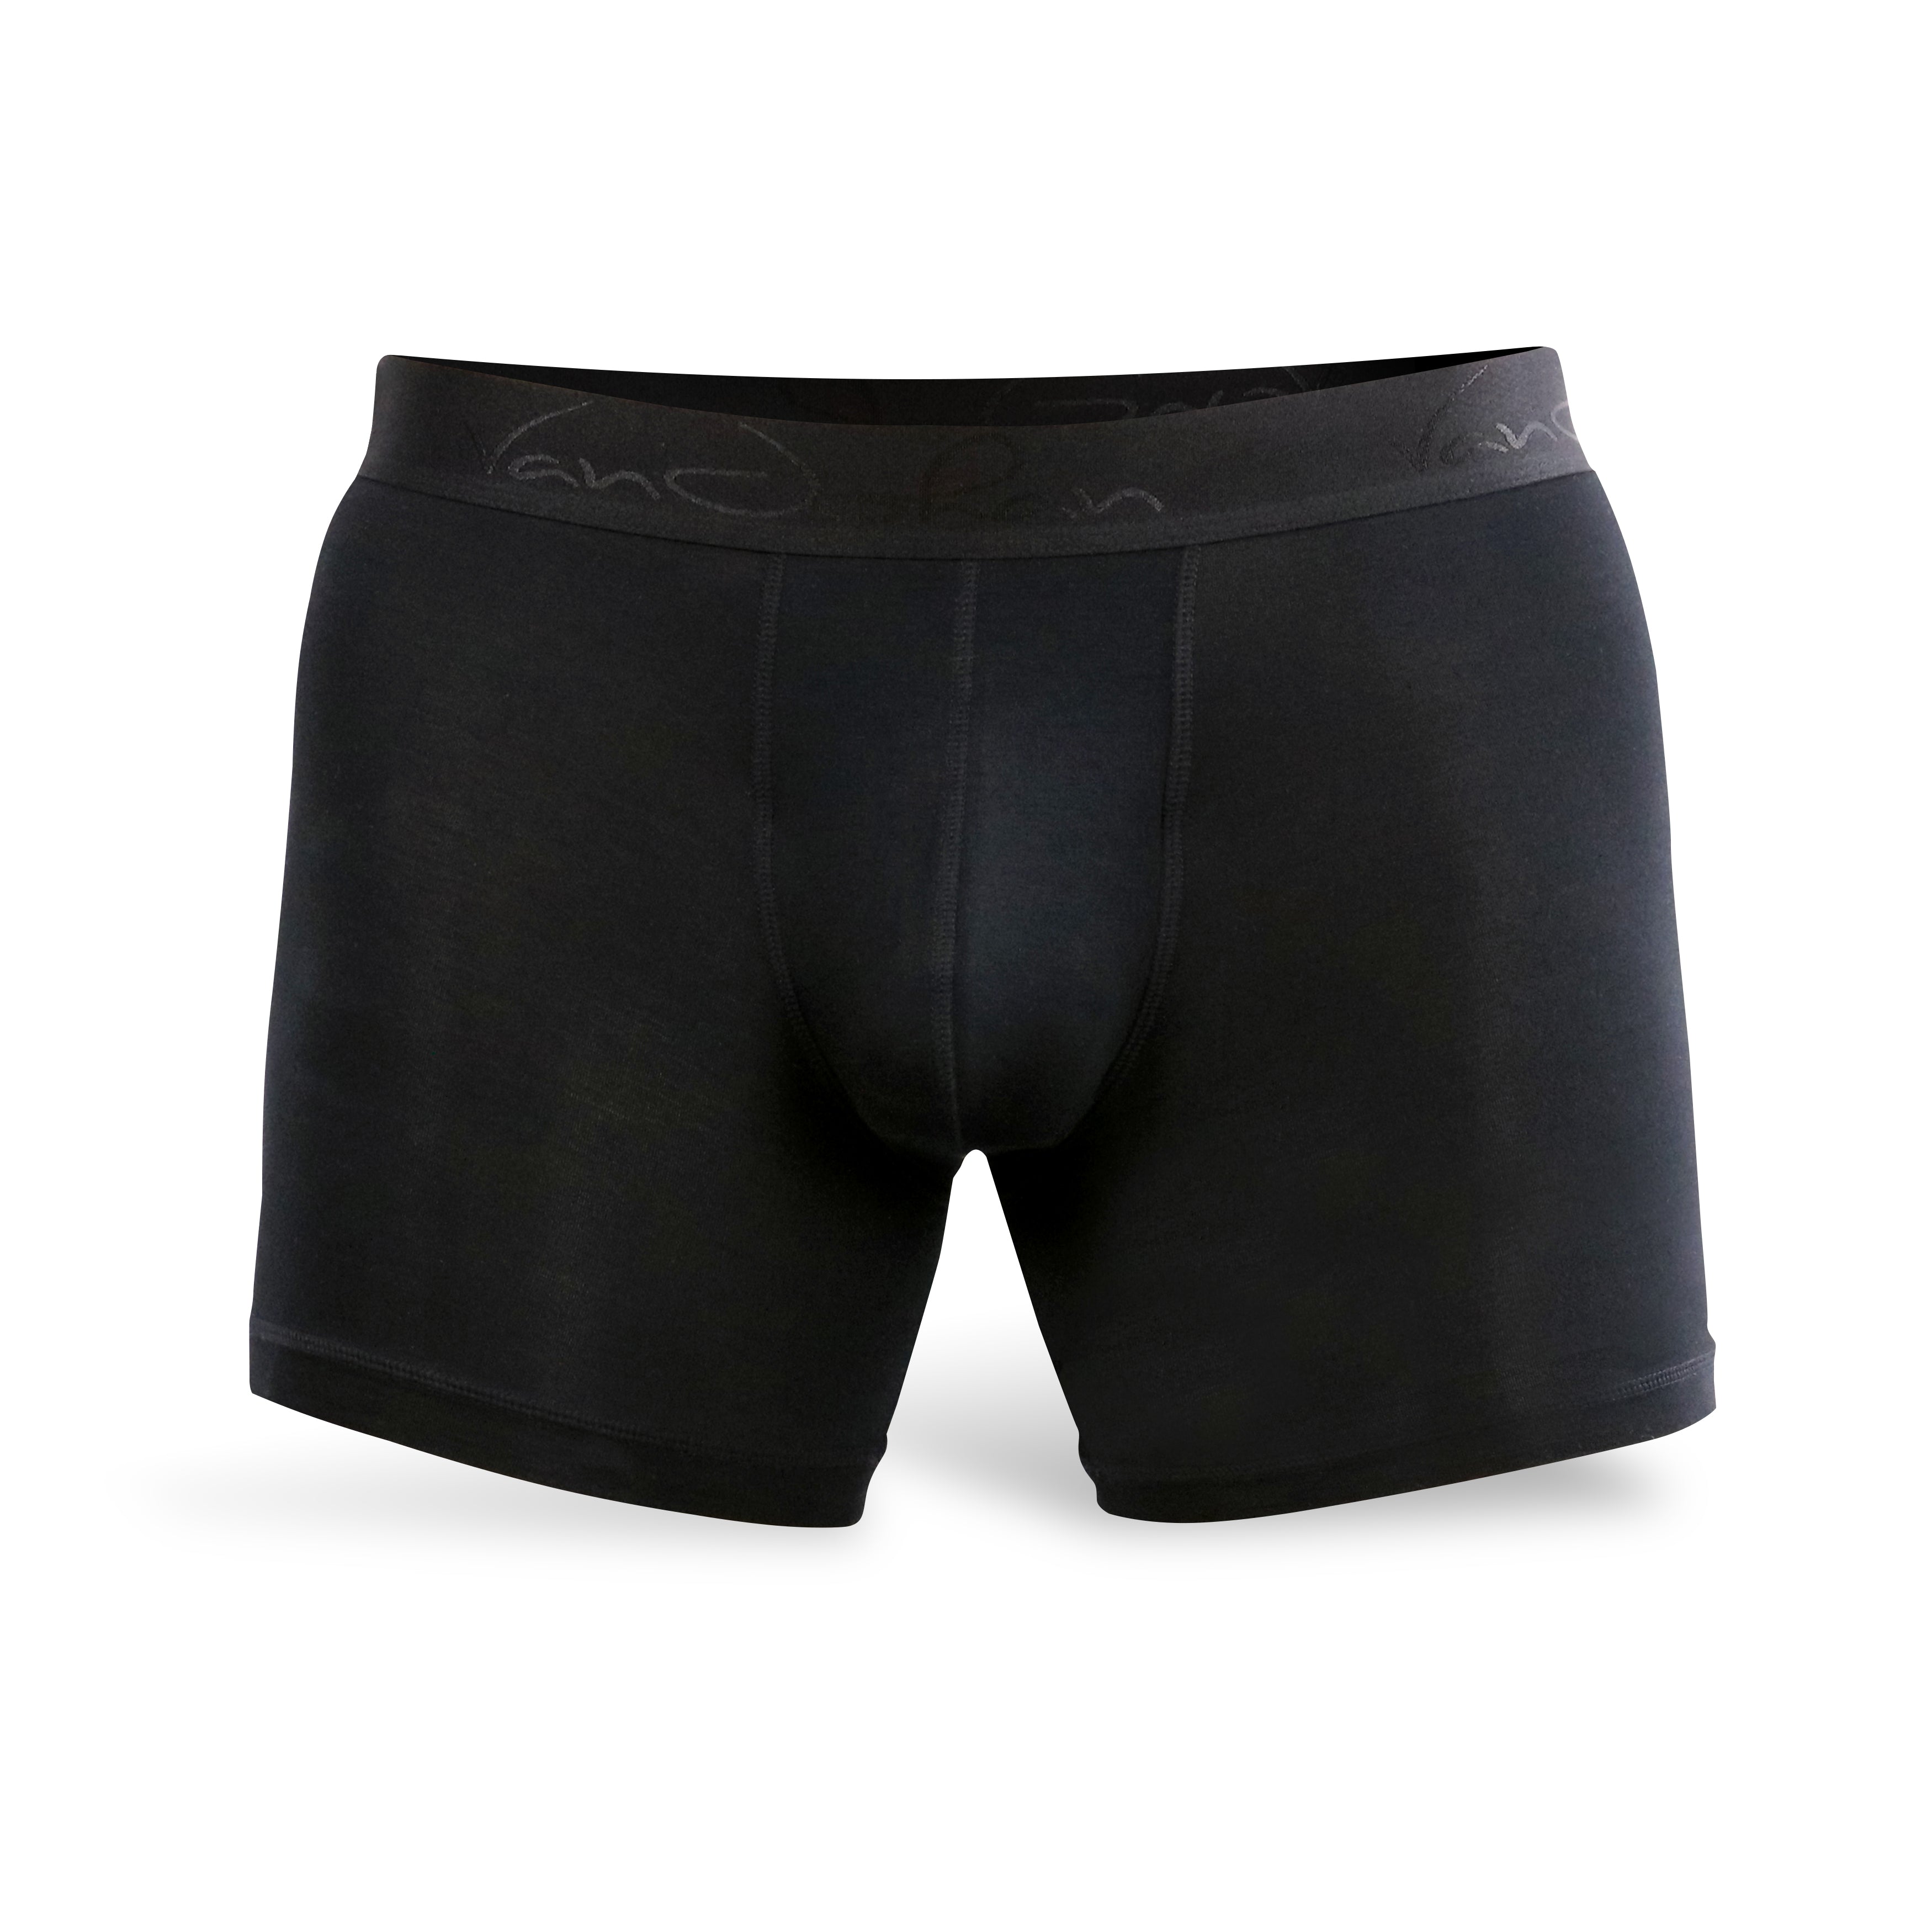 Onyx Black Boxer Briefs  Best Mens Underwear to Prevent Chafing – VanJohan  Underwear